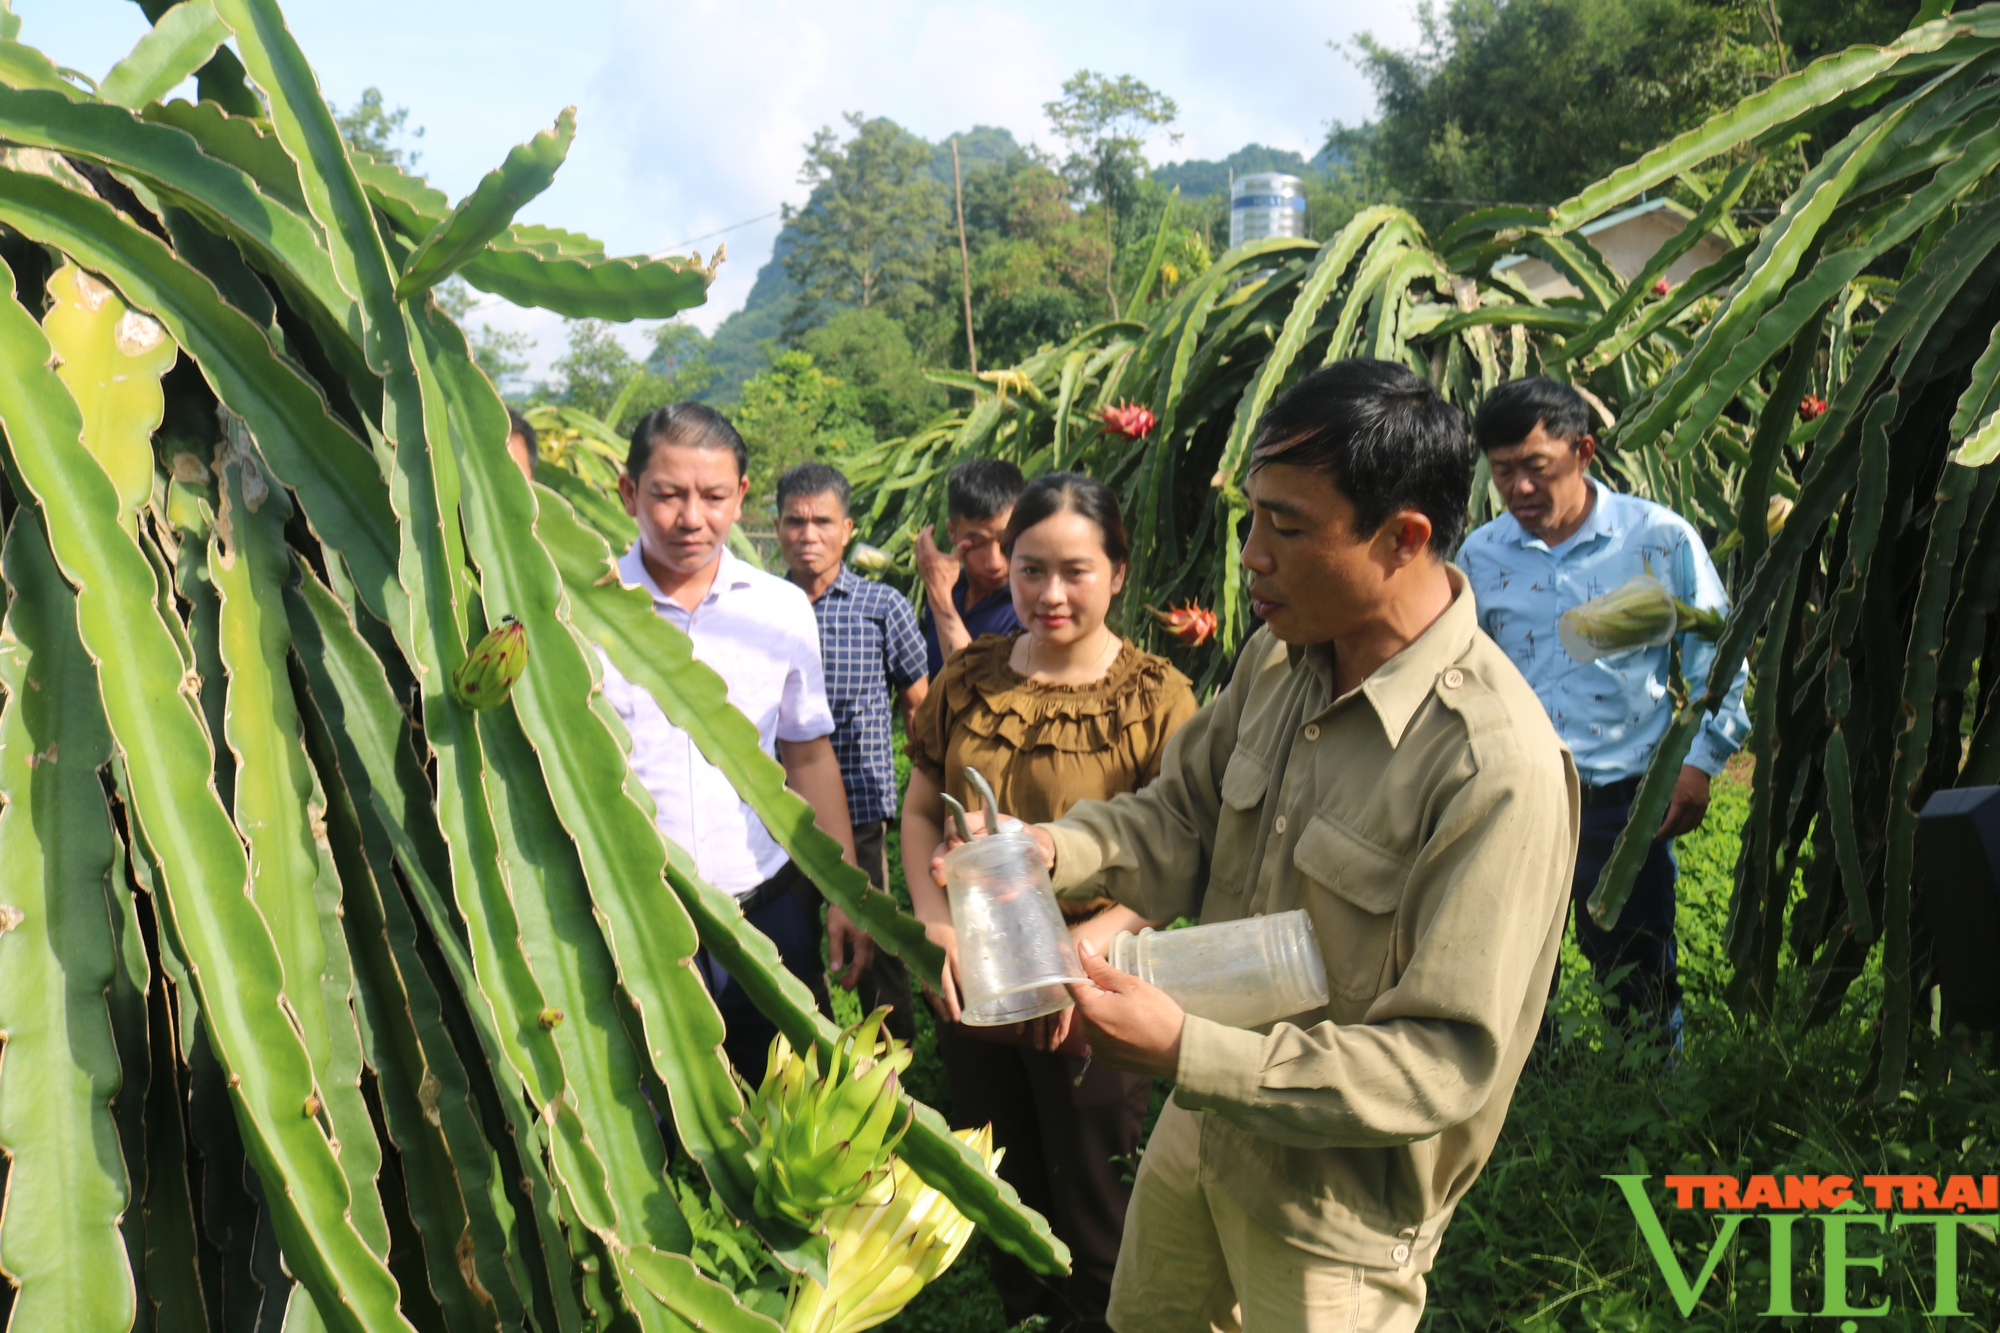  Liên kết sản xuất, hỗ trợ bao tiêu sản phẩm cho nông dân Sơn La - Ảnh 5.